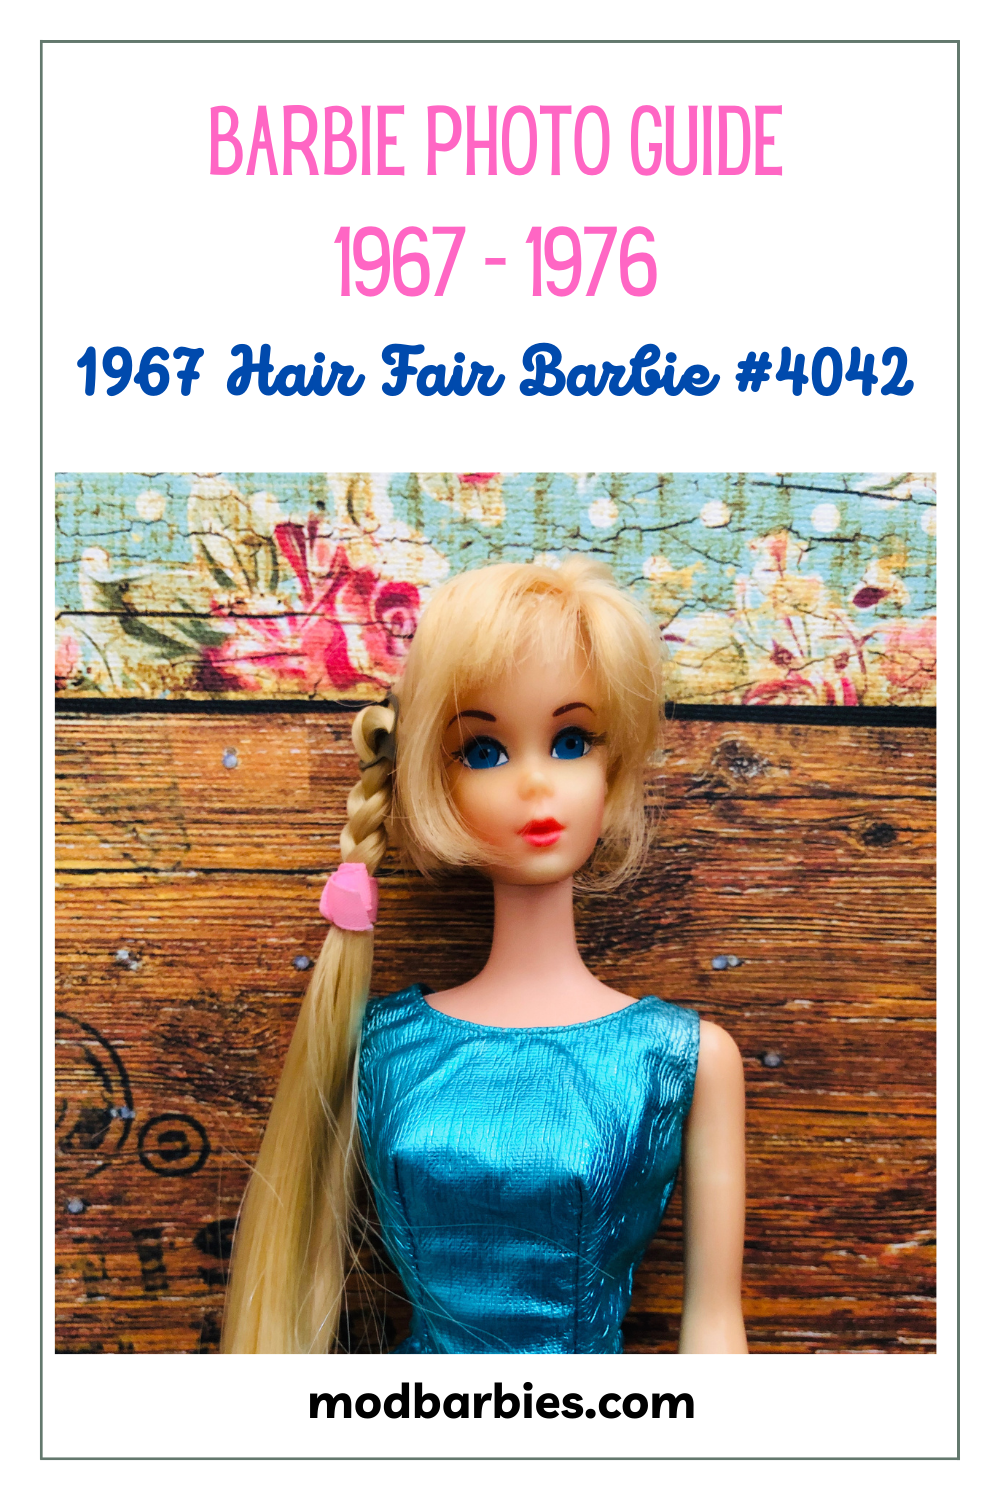 1967 Hair Fair Barbie doll